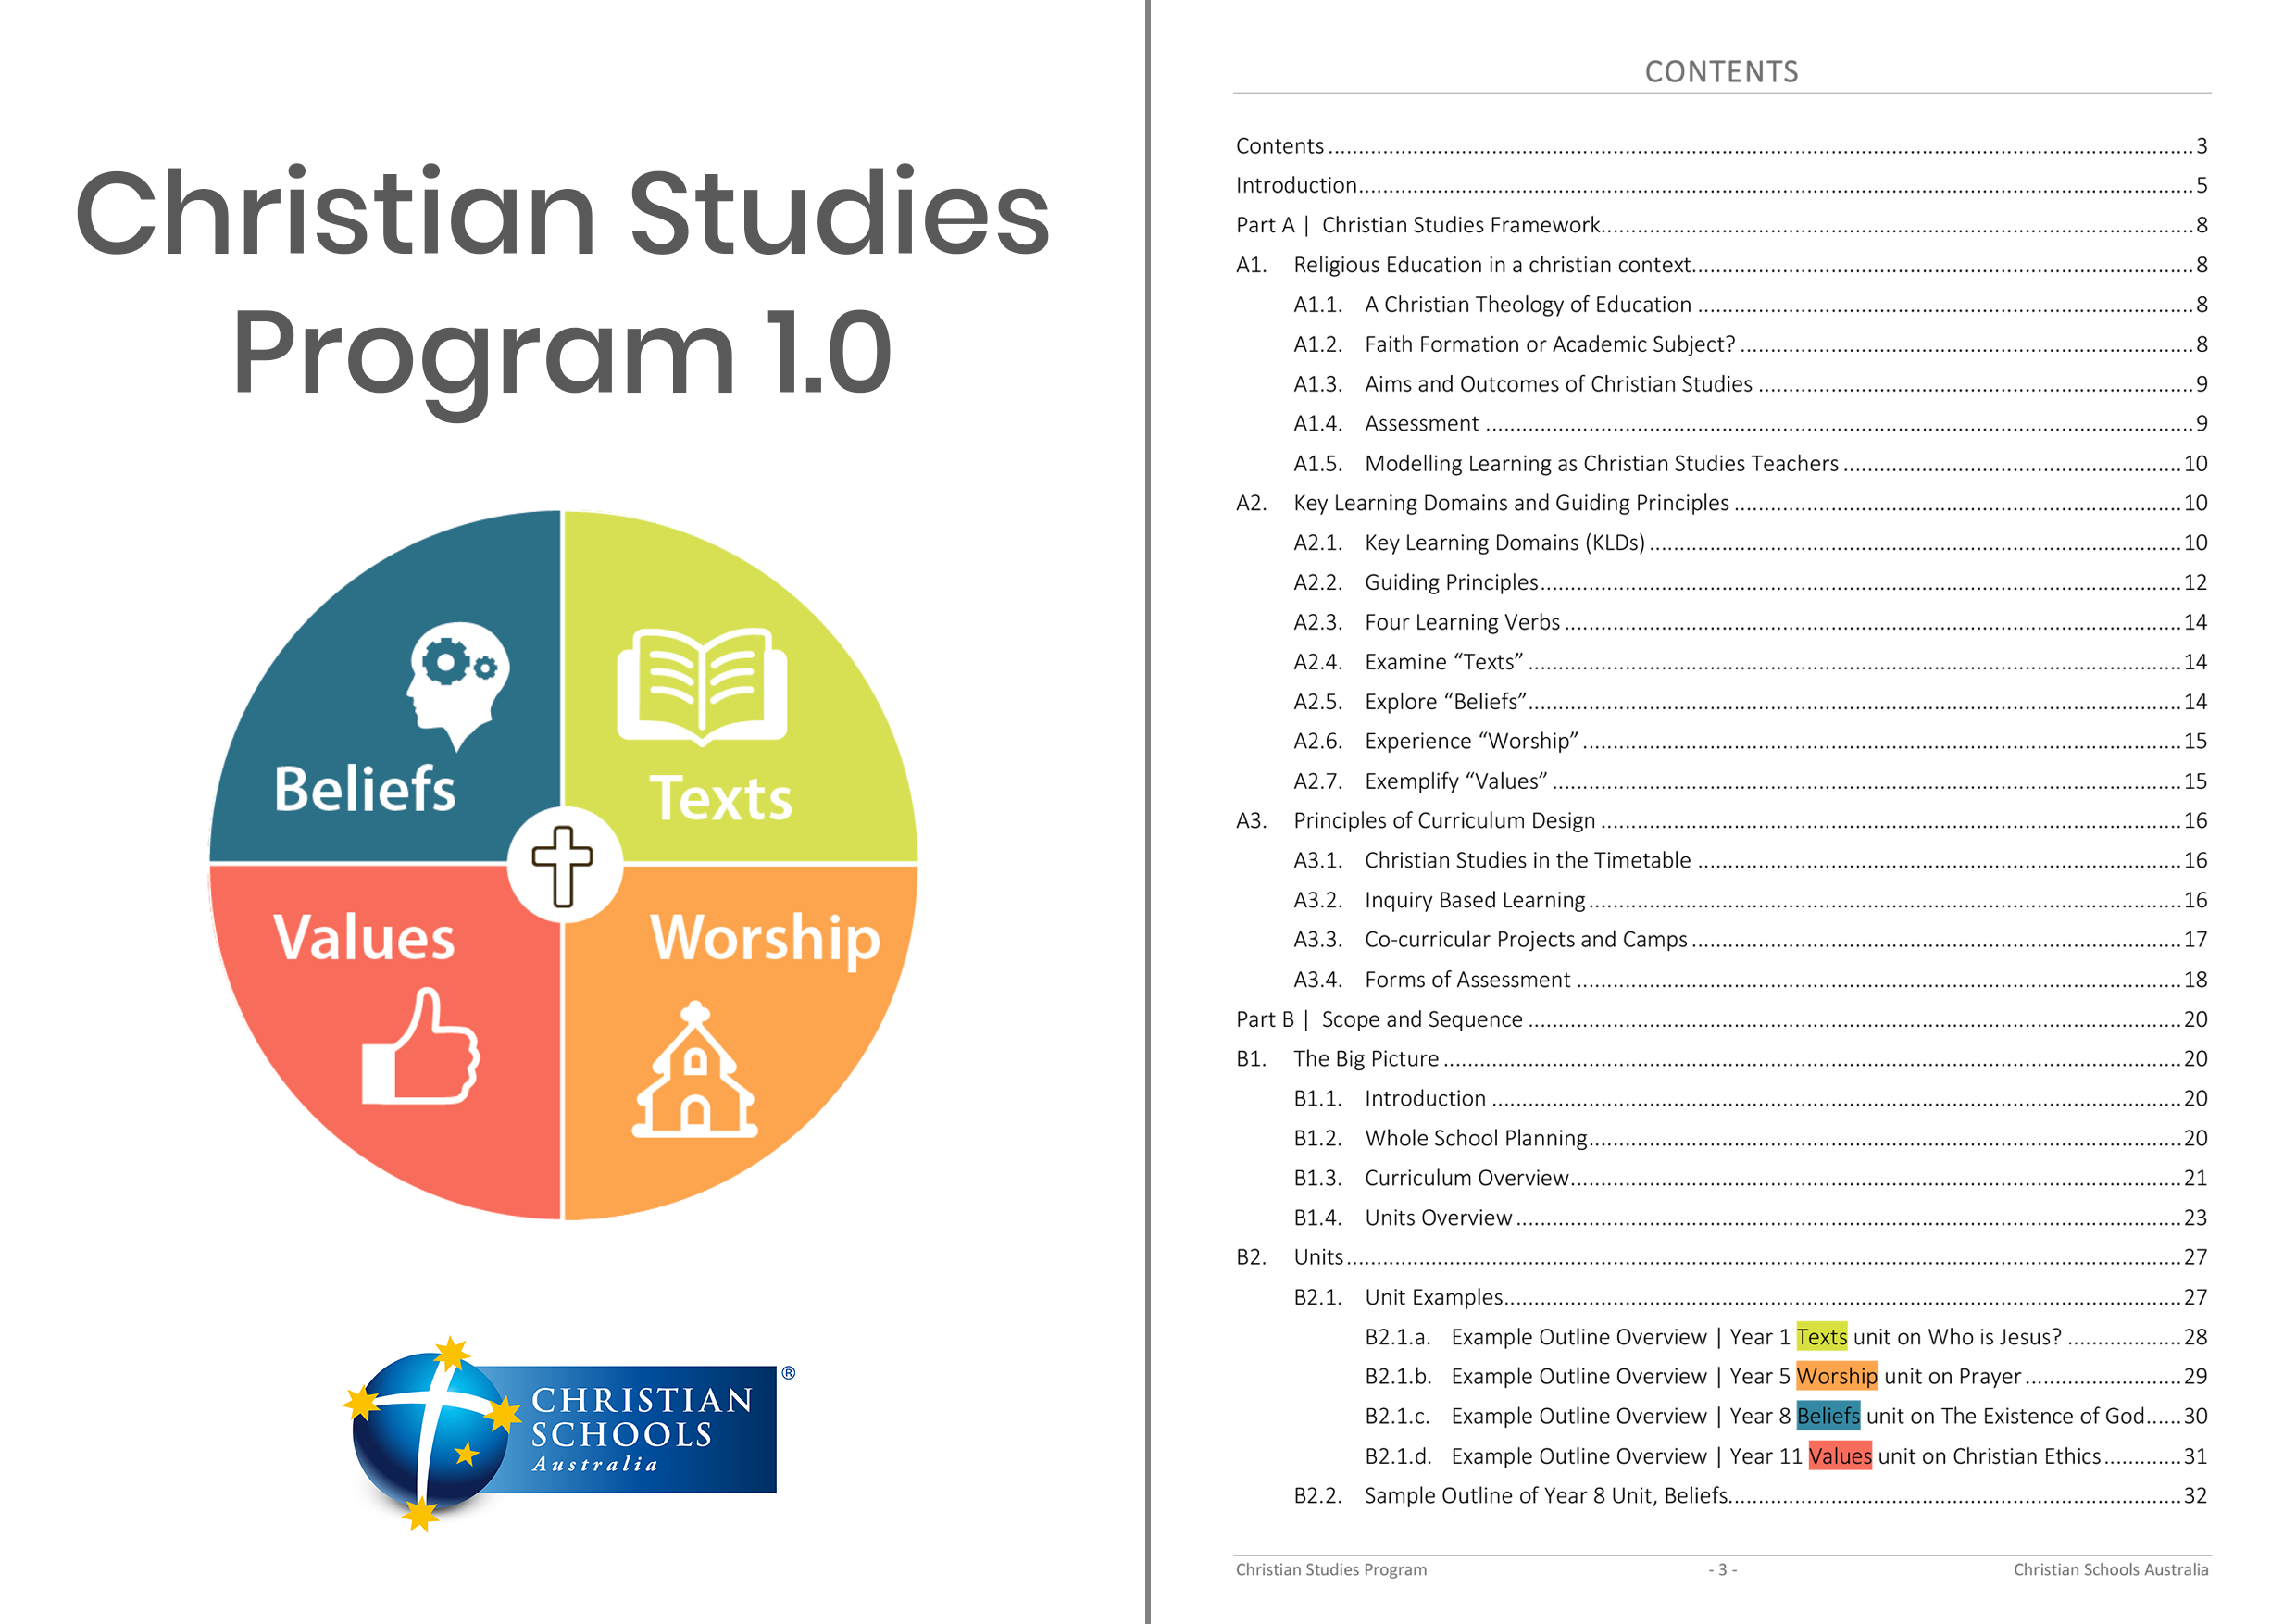 Christian Studies Program 1.0